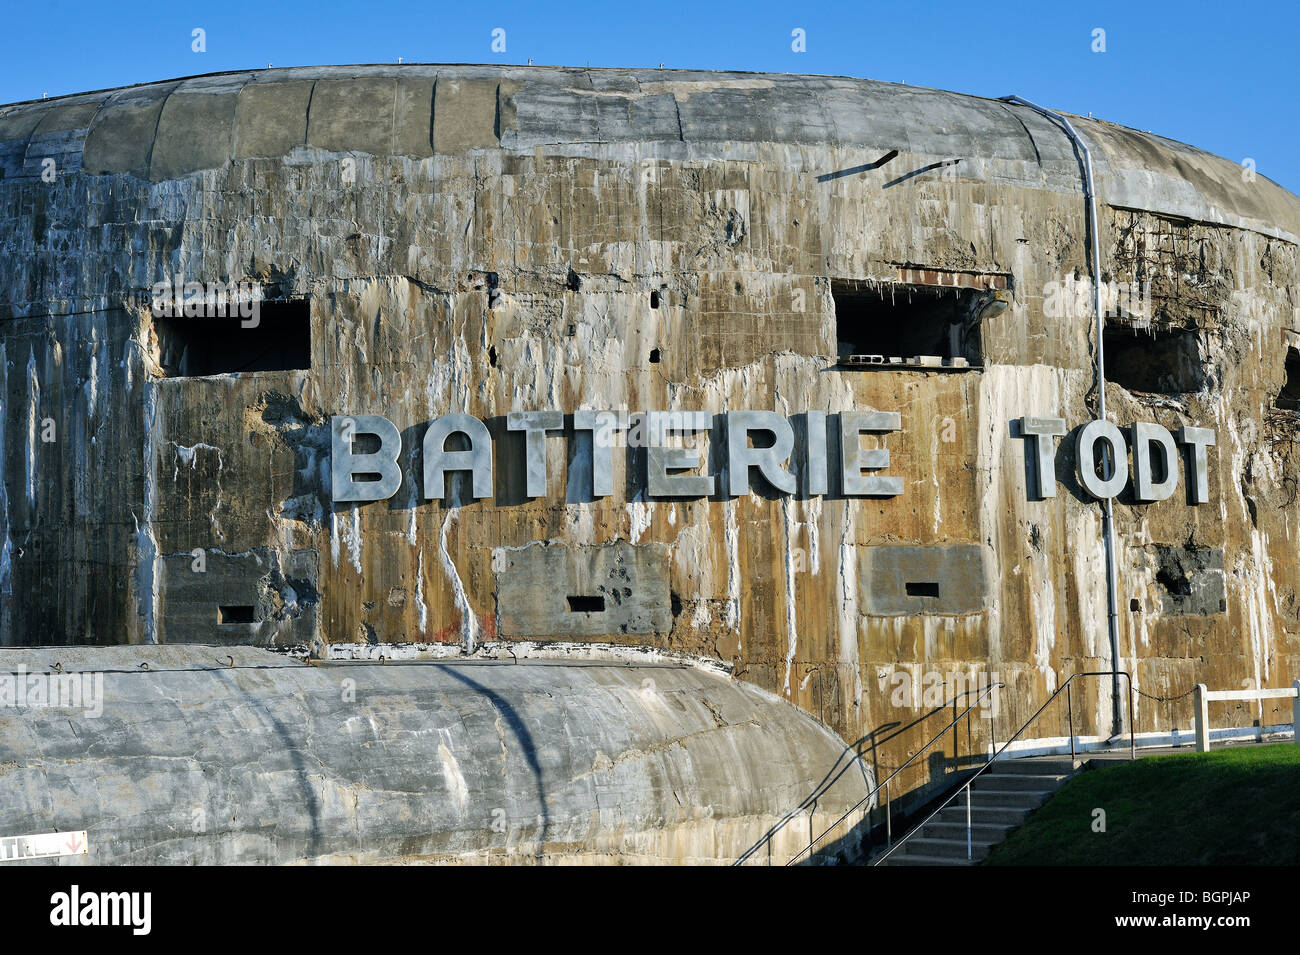 Musée du Mur de l'Atlantique de la Seconde Guerre mondiale Seconde Guerre mondiale avec deux bunker batterie Todt, Audinghen, Côte d'Opale, France Banque D'Images